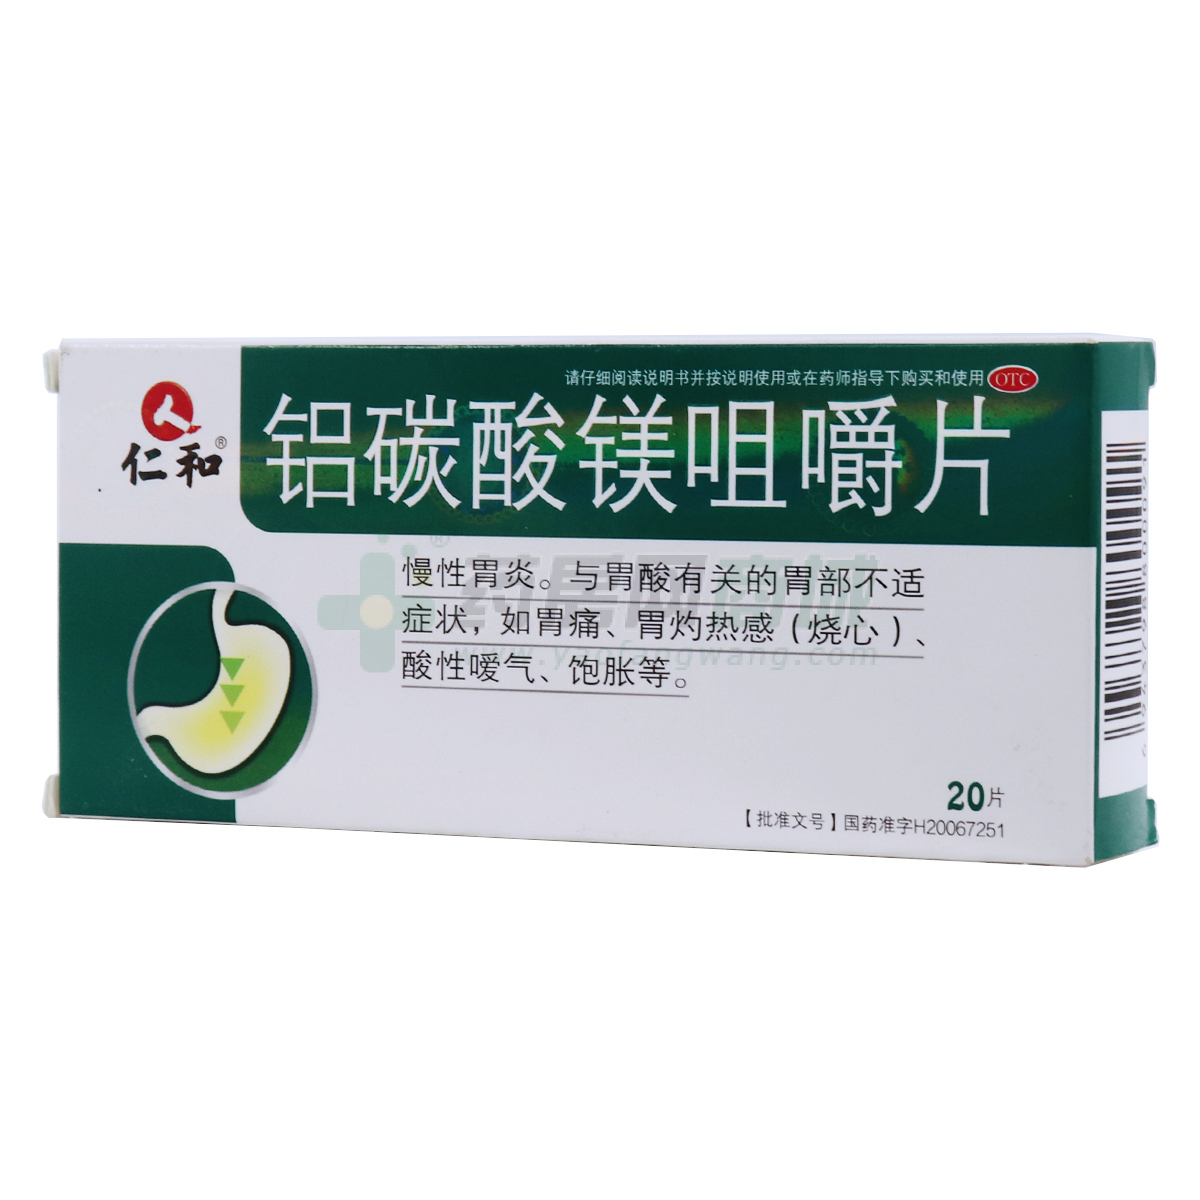 铝碳酸镁咀嚼片 - 四川健能制药有限公司